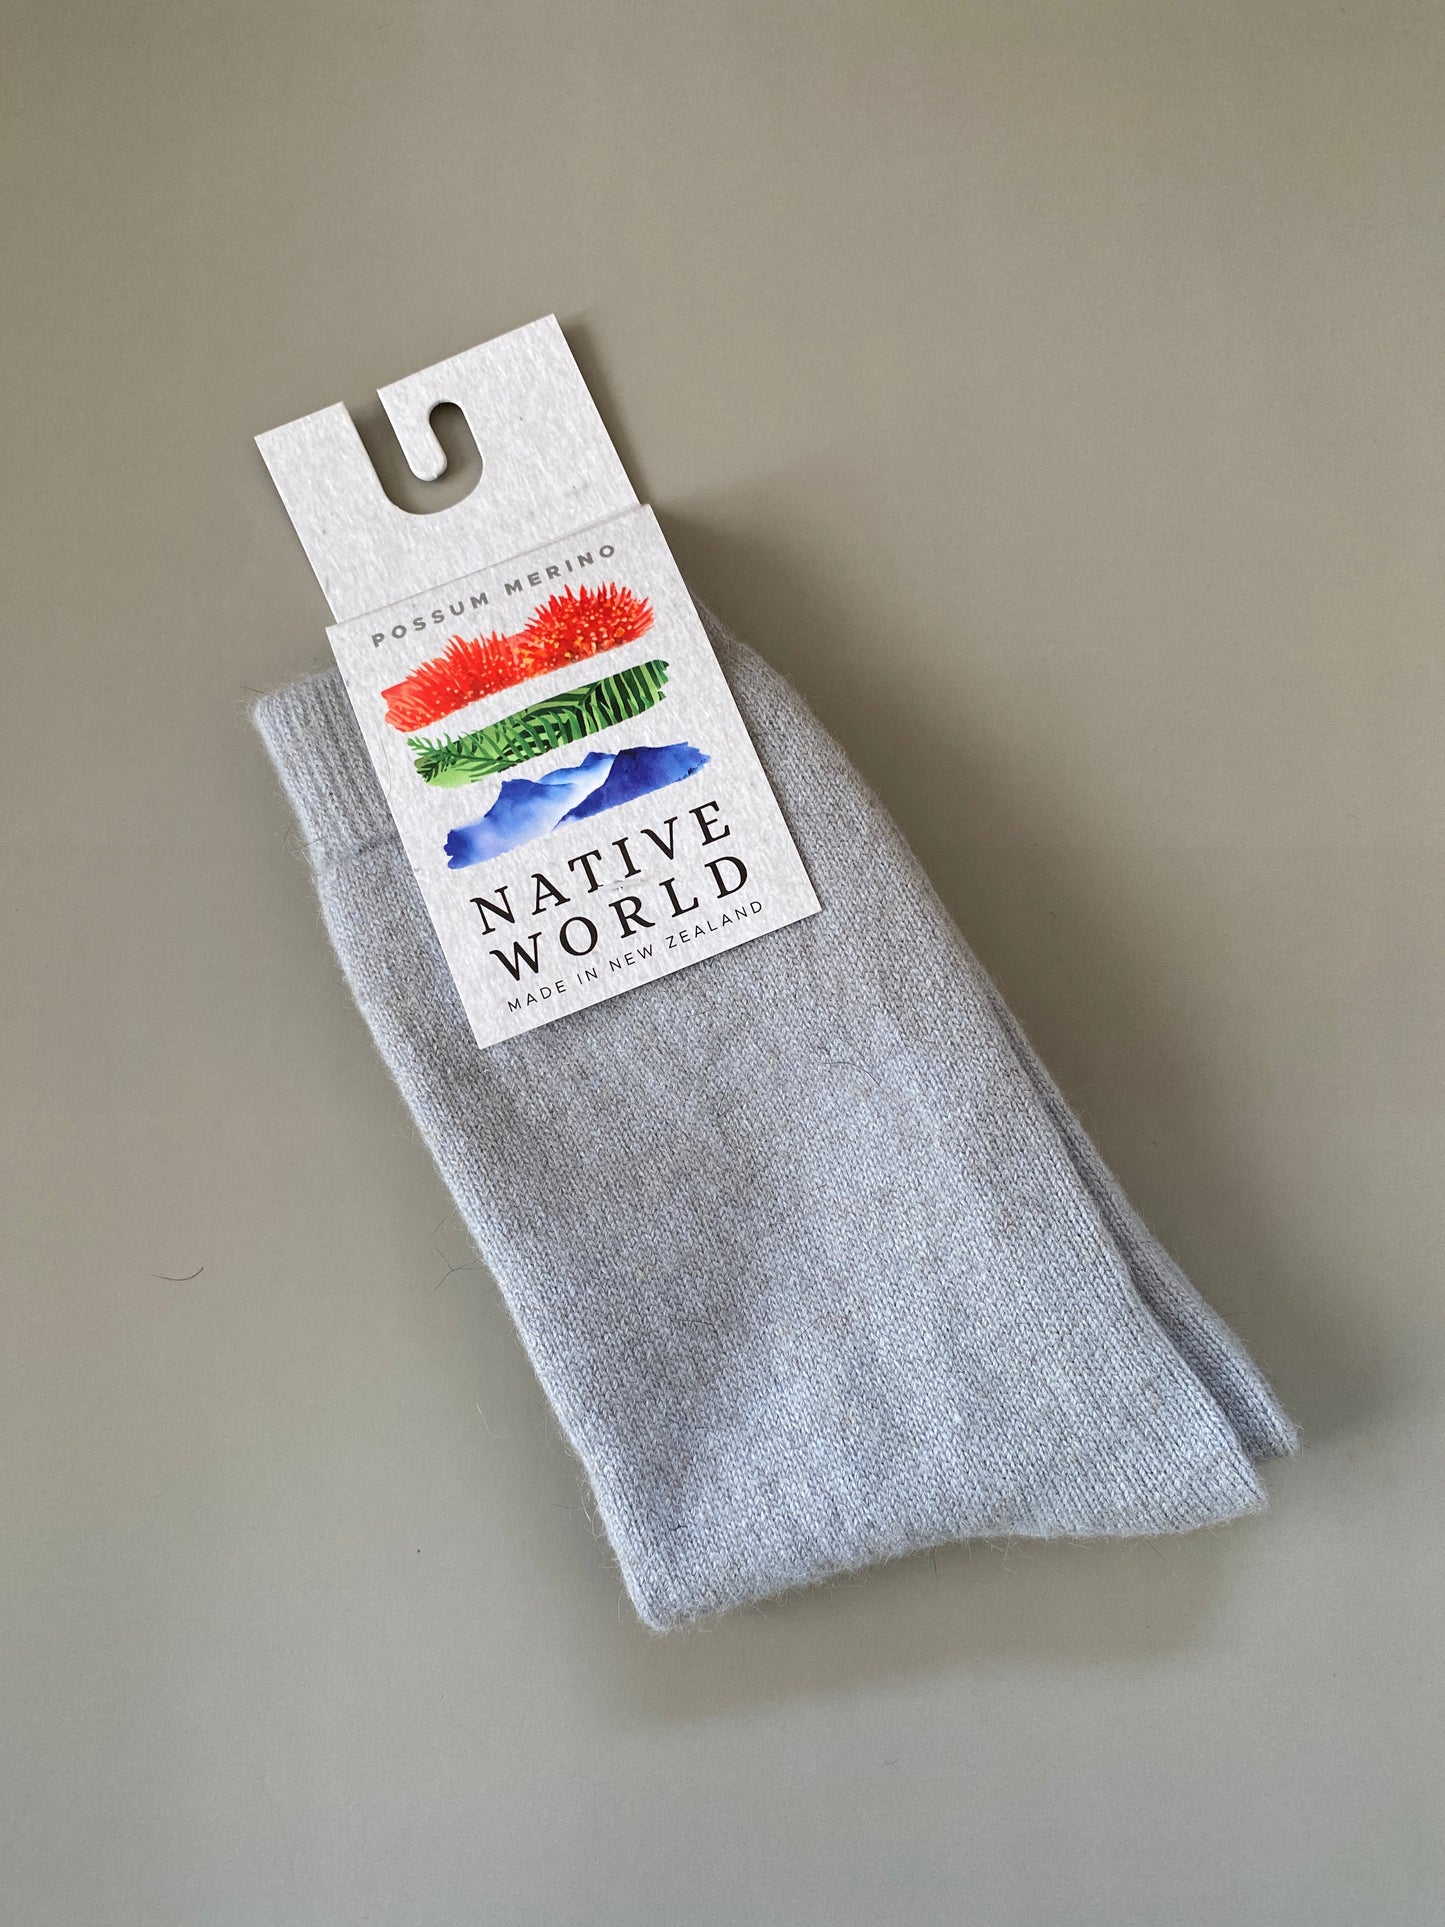 Socks: Plain Sock, Merino Wool + Possum, Made in New Zealand